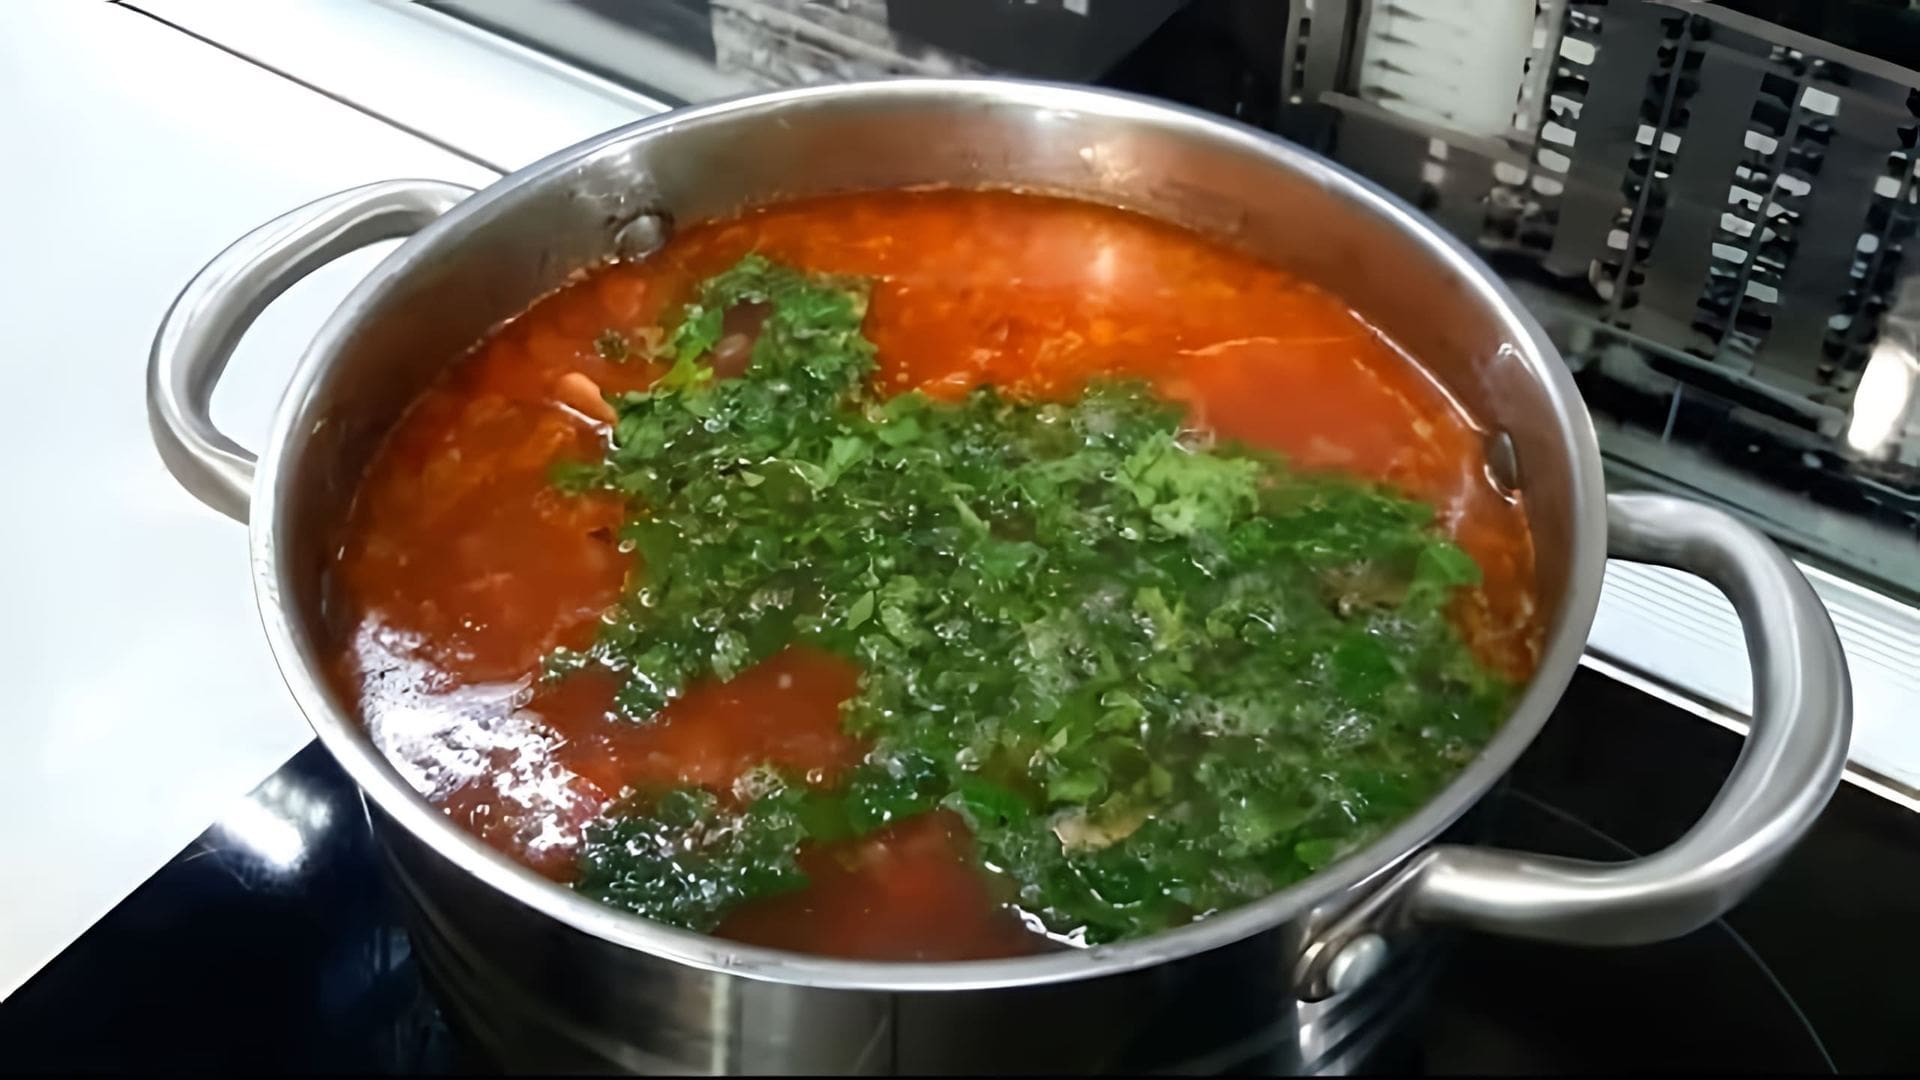 В этом видео демонстрируется процесс приготовления супа харчо